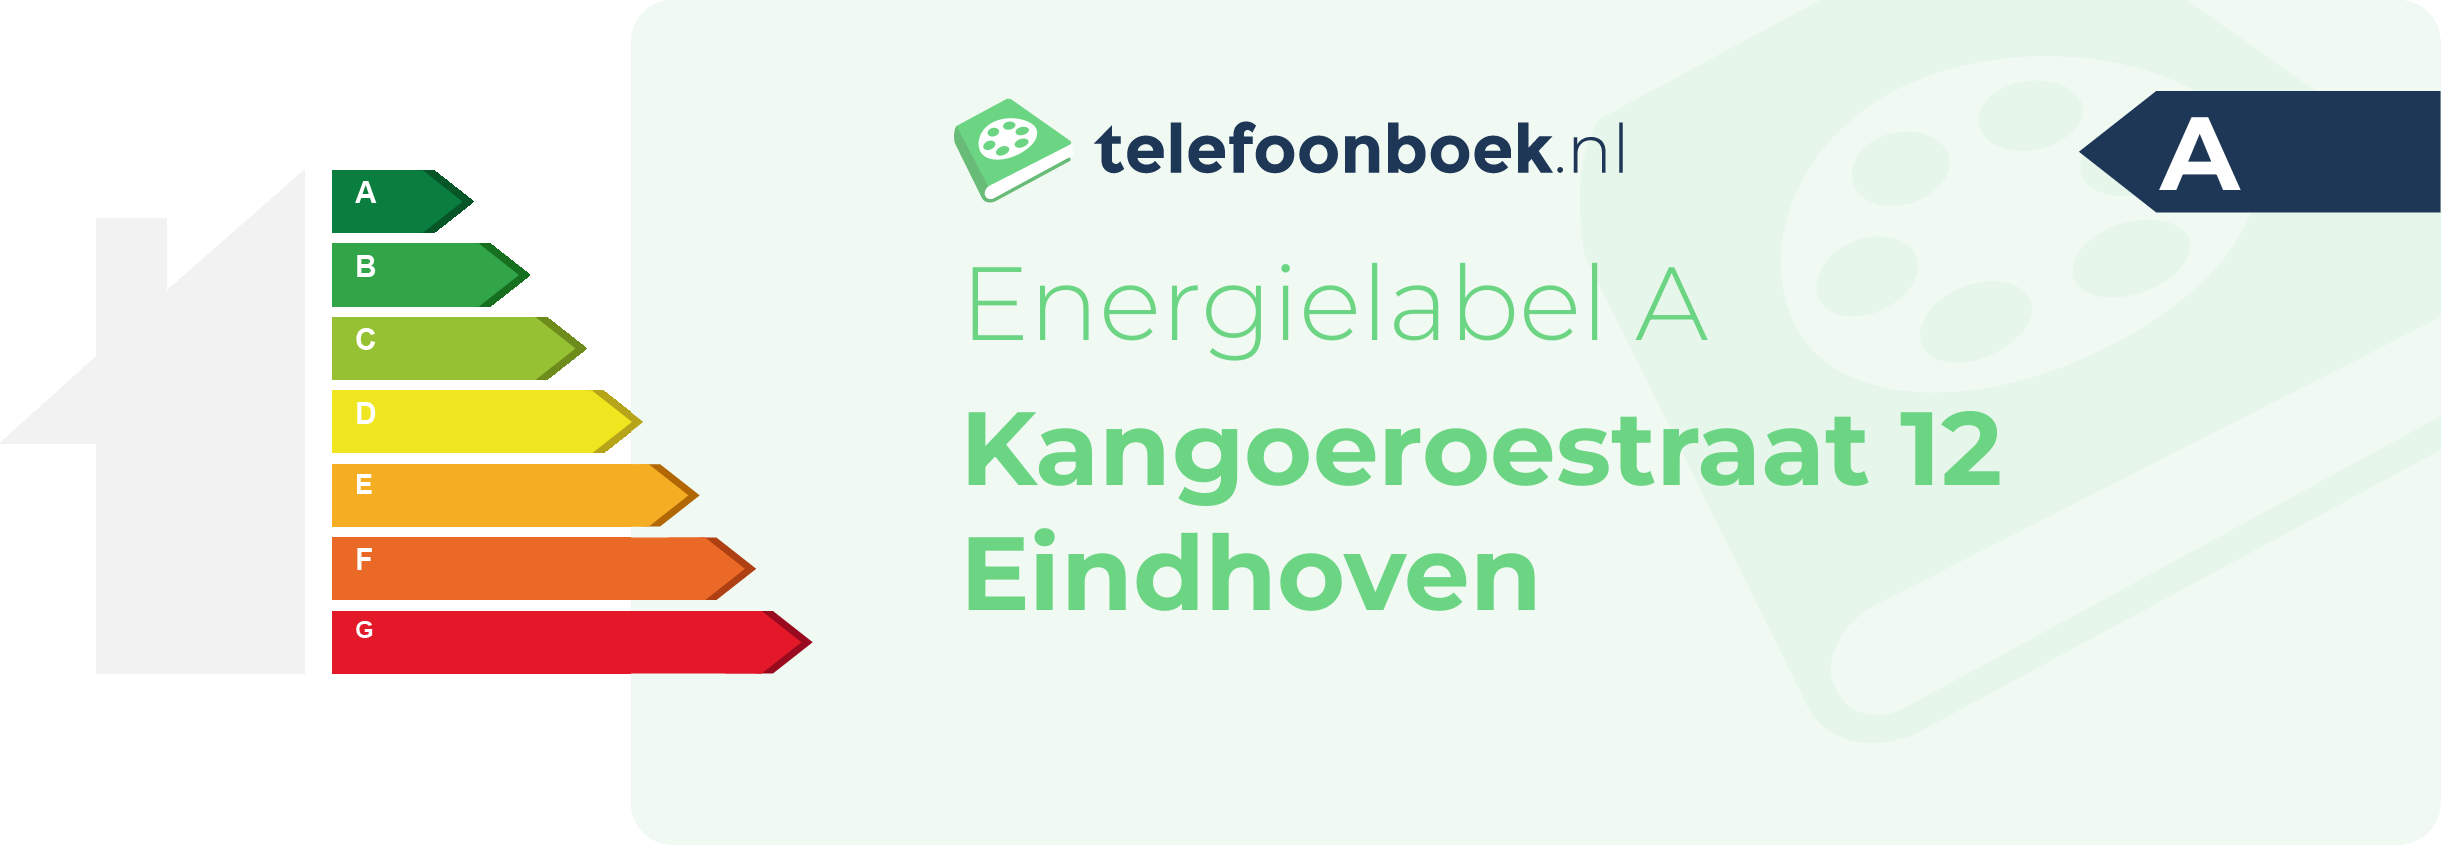 Energielabel Kangoeroestraat 12 Eindhoven